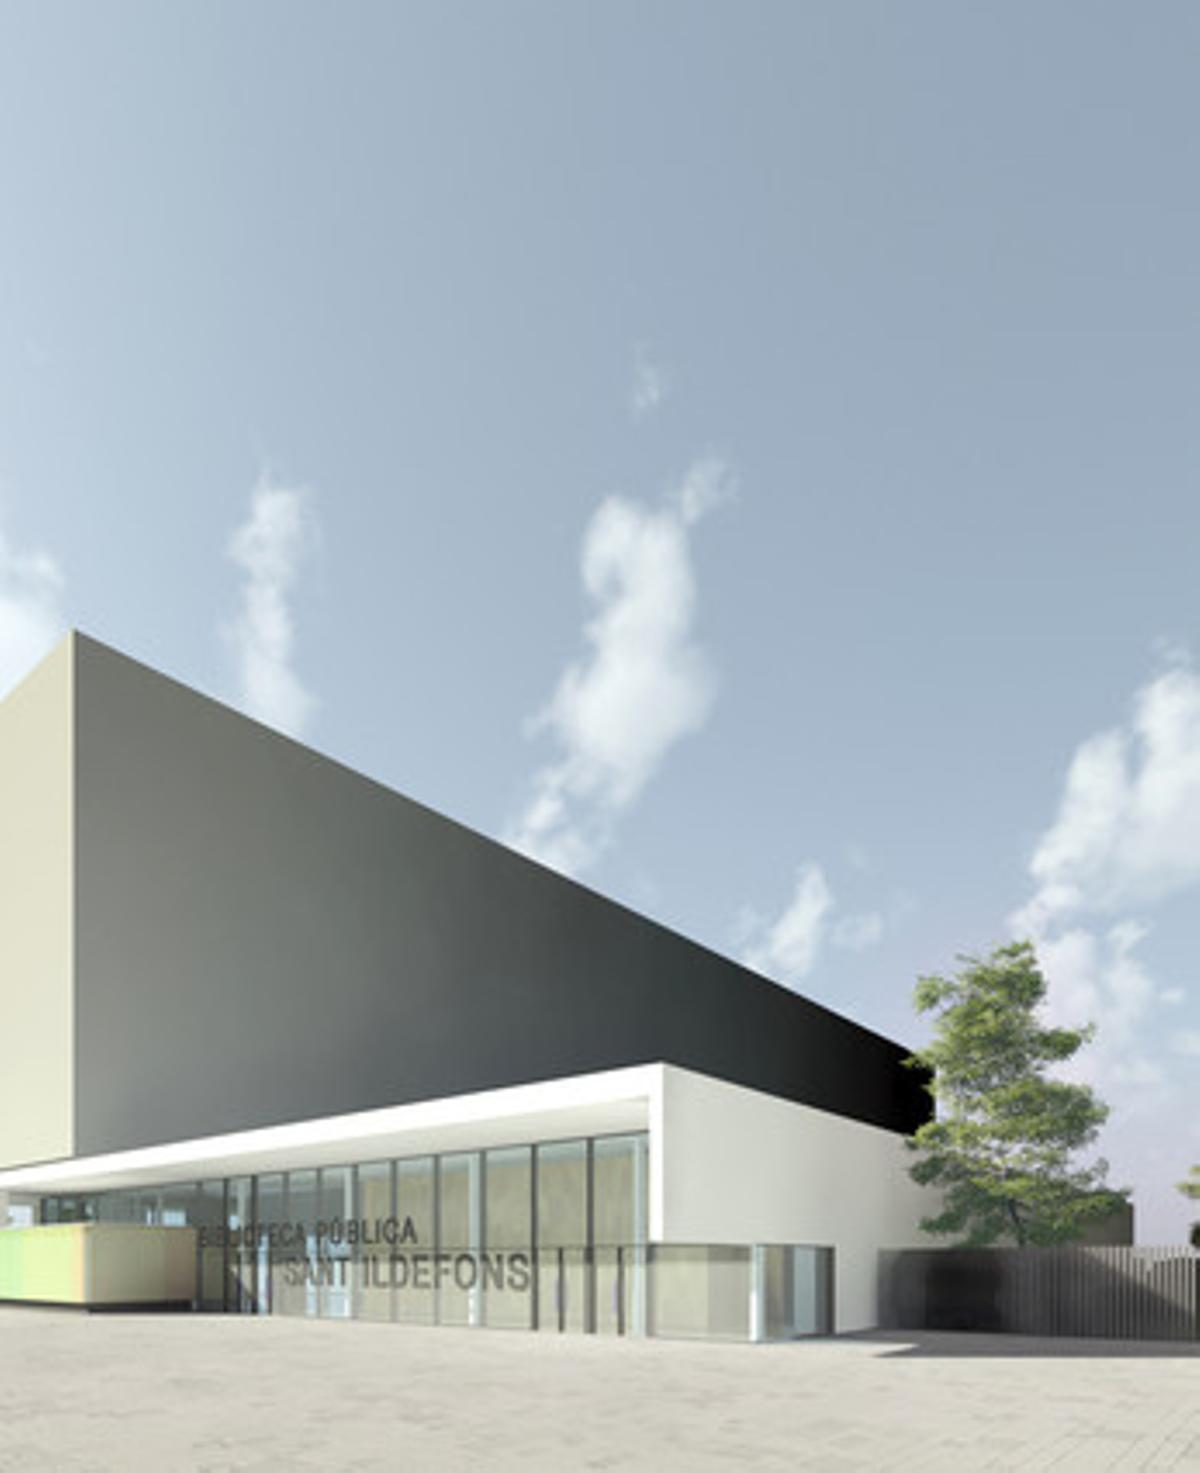 Imagen virtual del nuevo centro cultural Sant Ildefons en Cornellà.